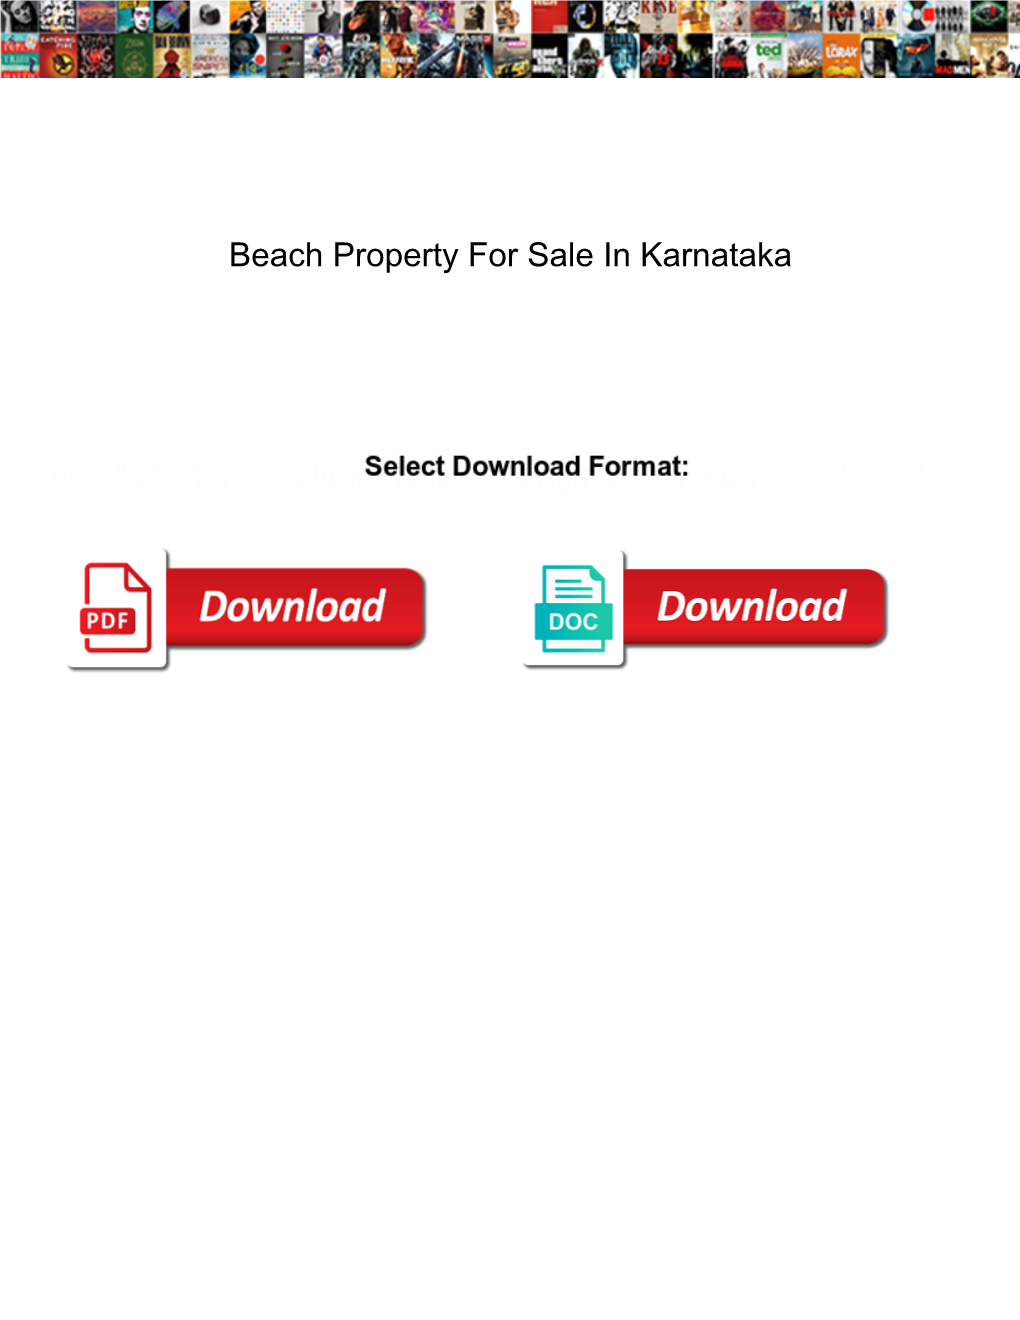 Beach Property for Sale in Karnataka